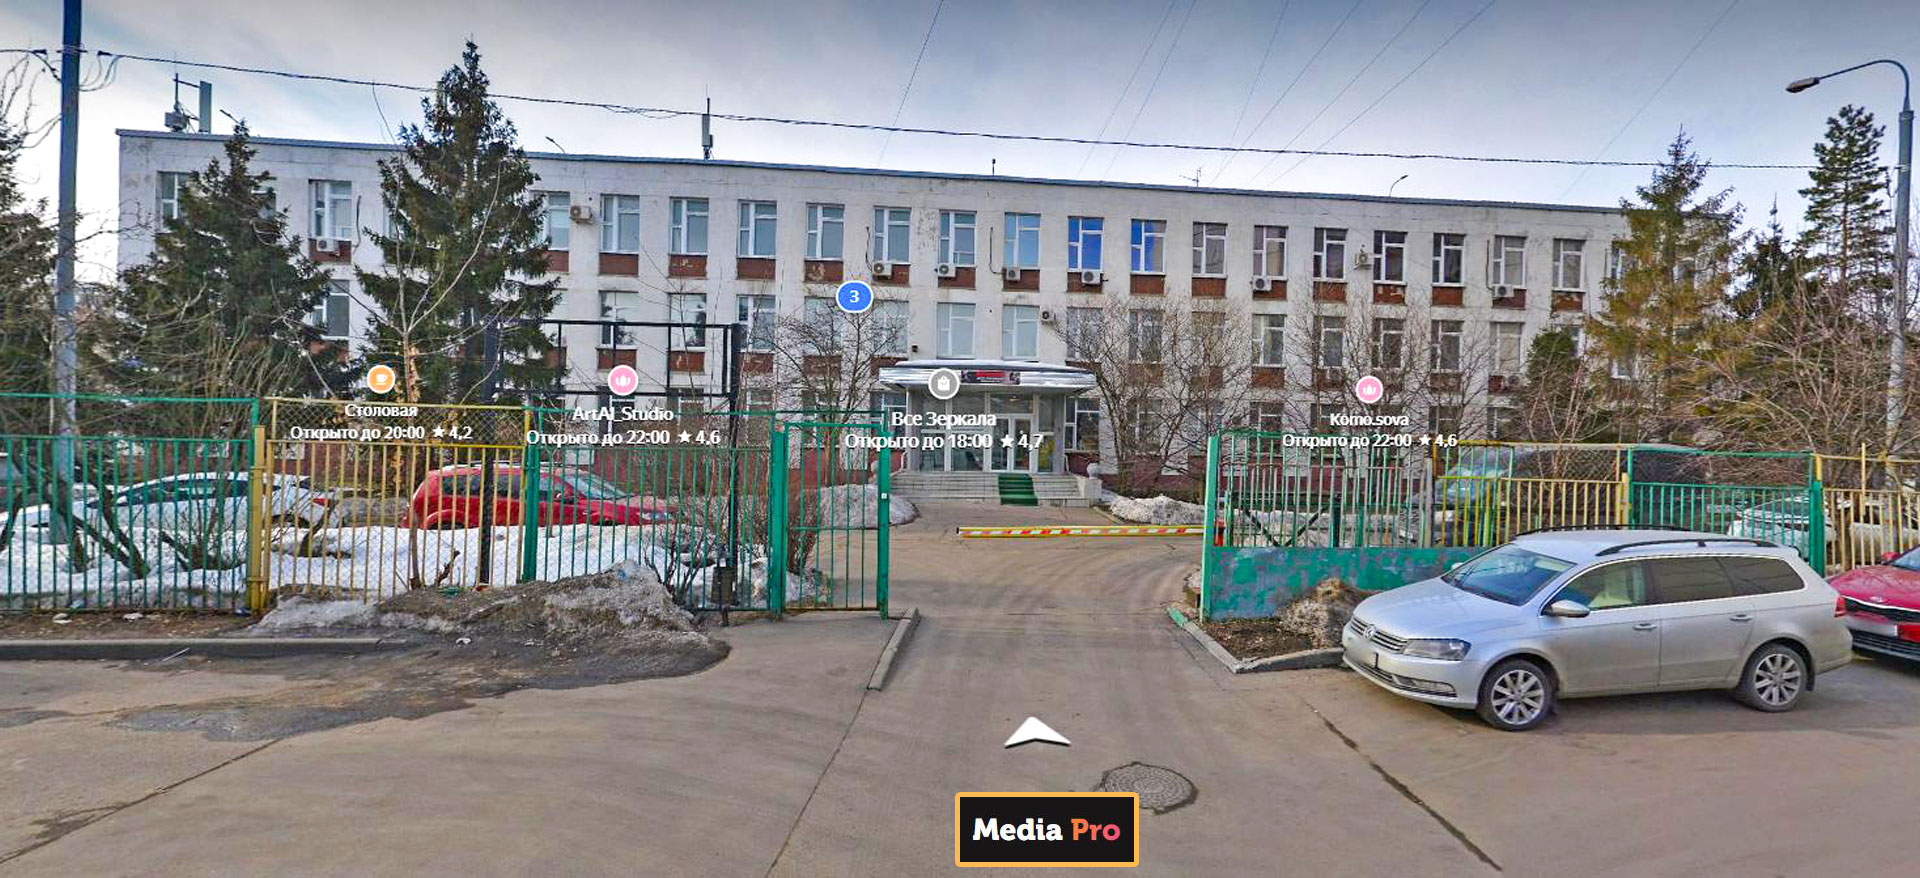 Здание в г. Москва на ул. ул. Мусоргского, расположен офис MediaPro.